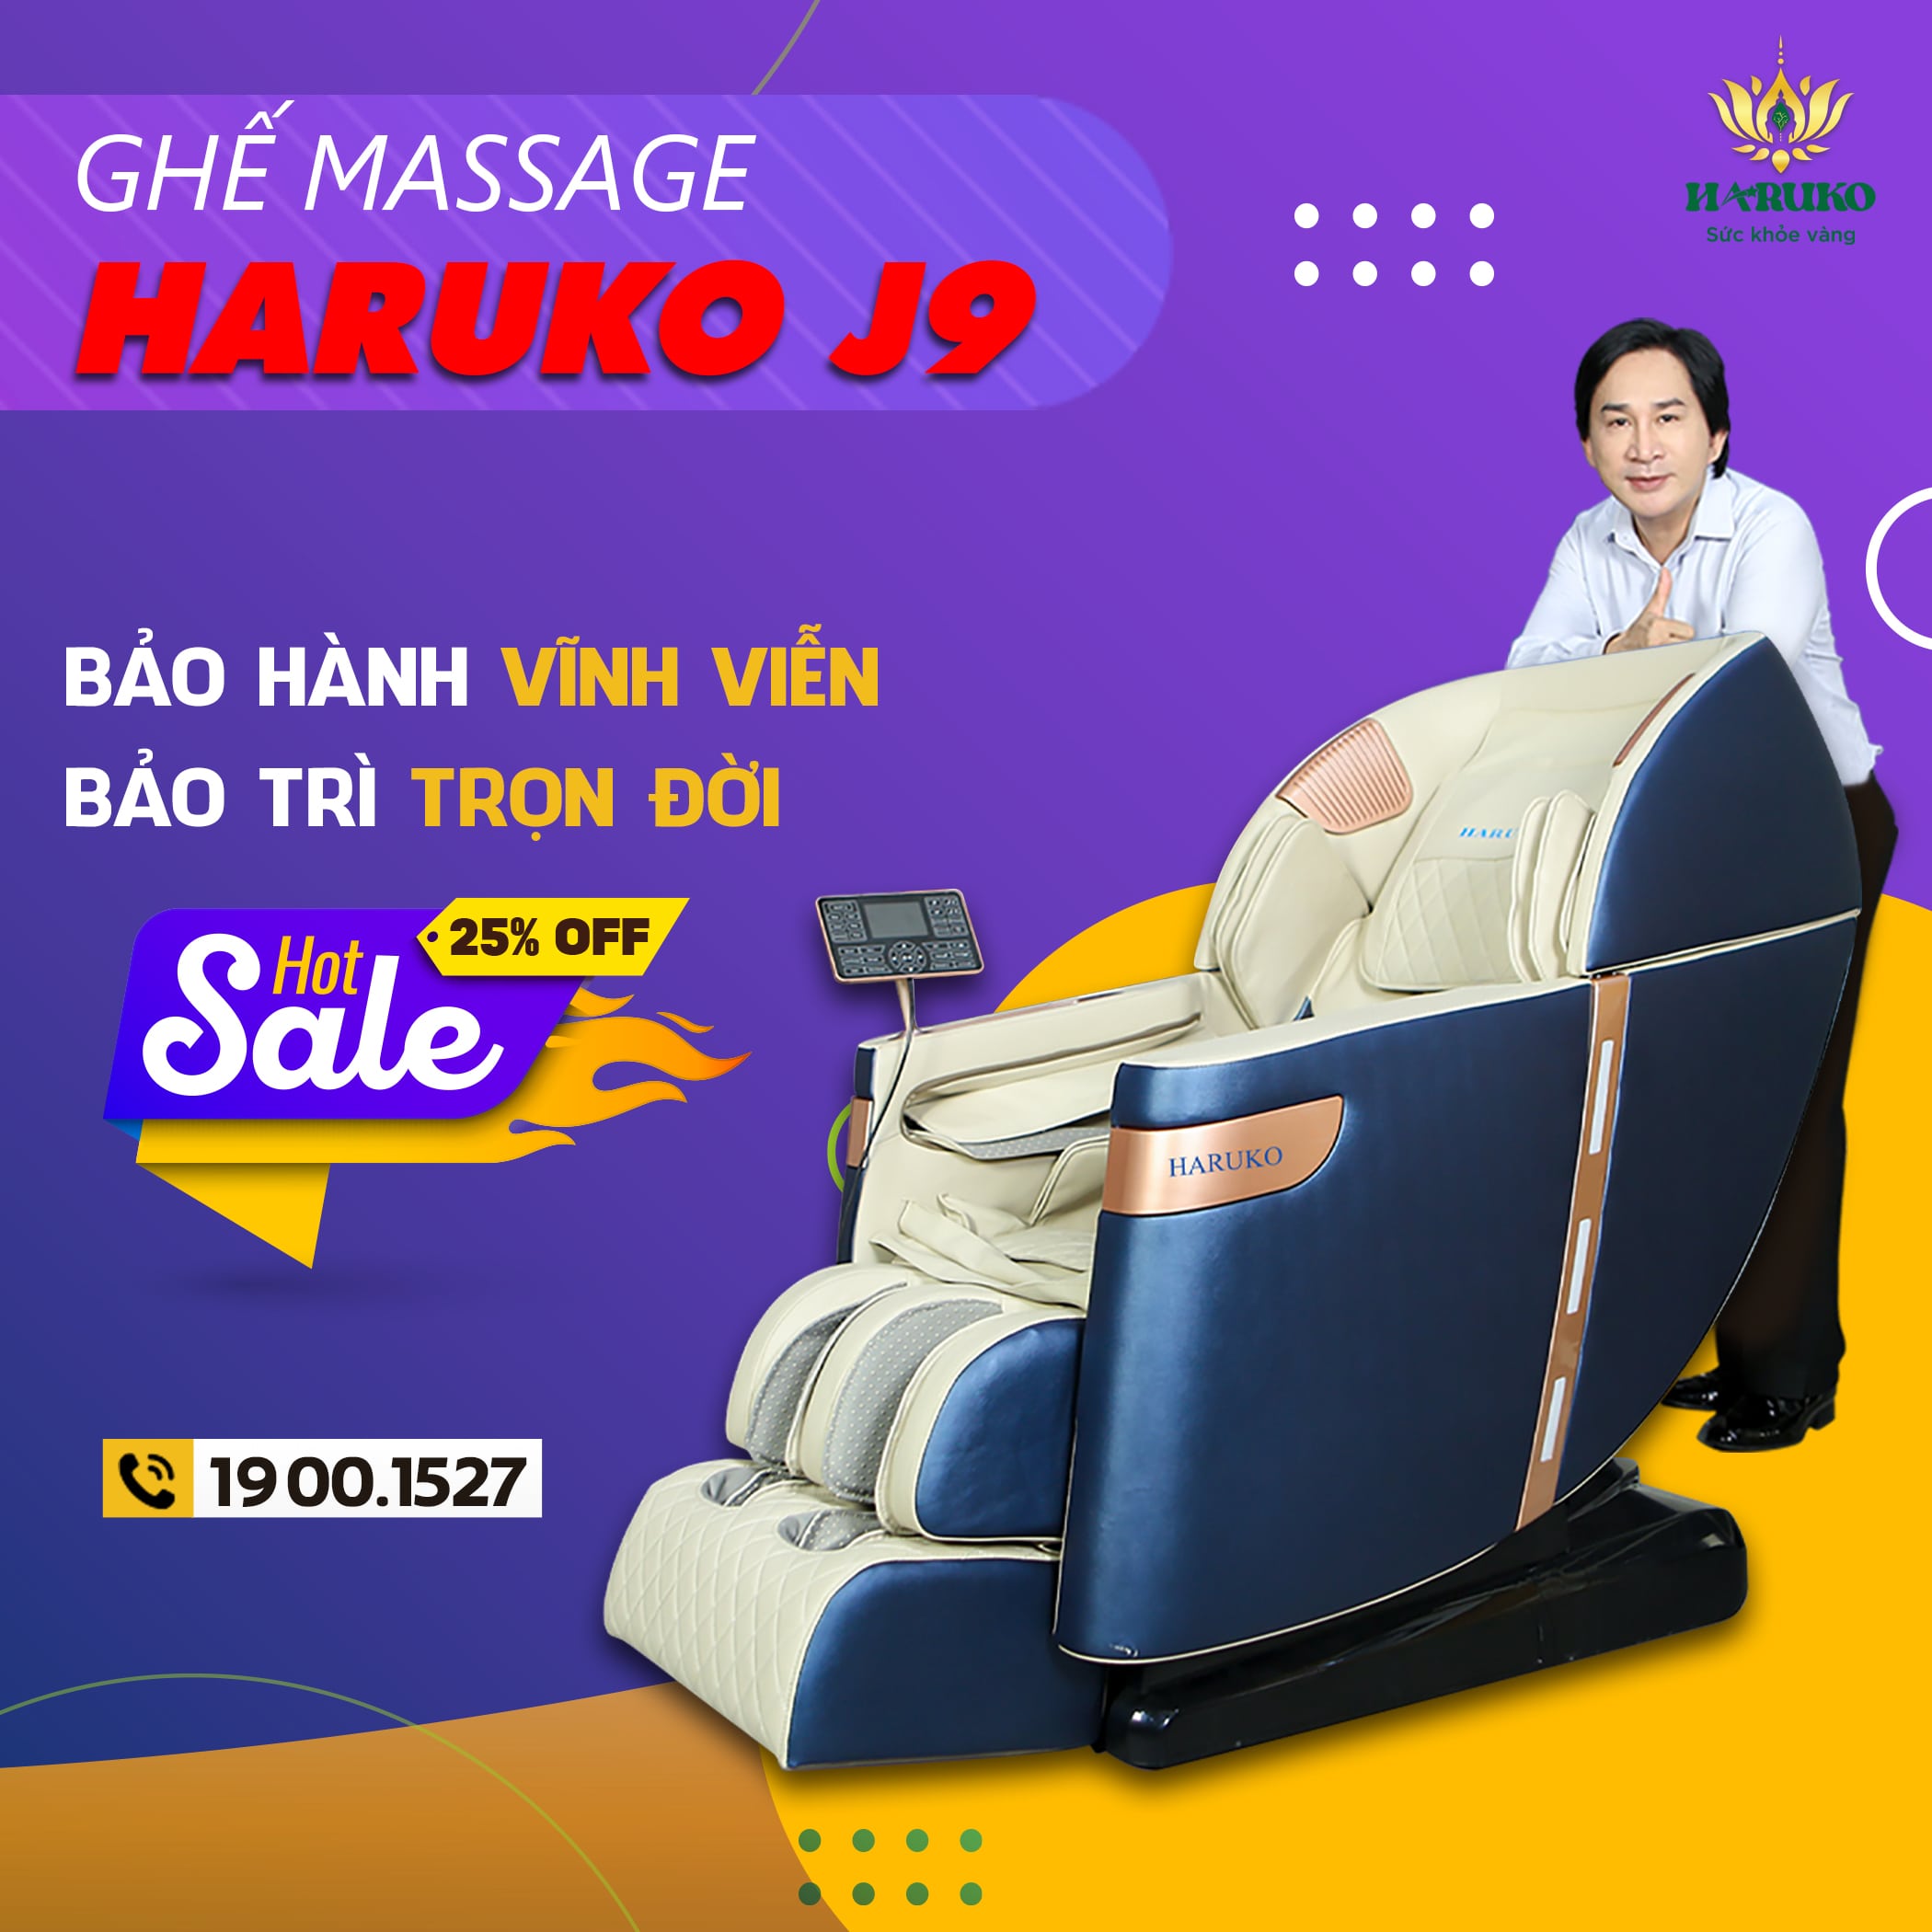 Ghế massage Haruko-J9 là dòng sản phẩm cao cấp với thiết kế thời thượng,sang trọng